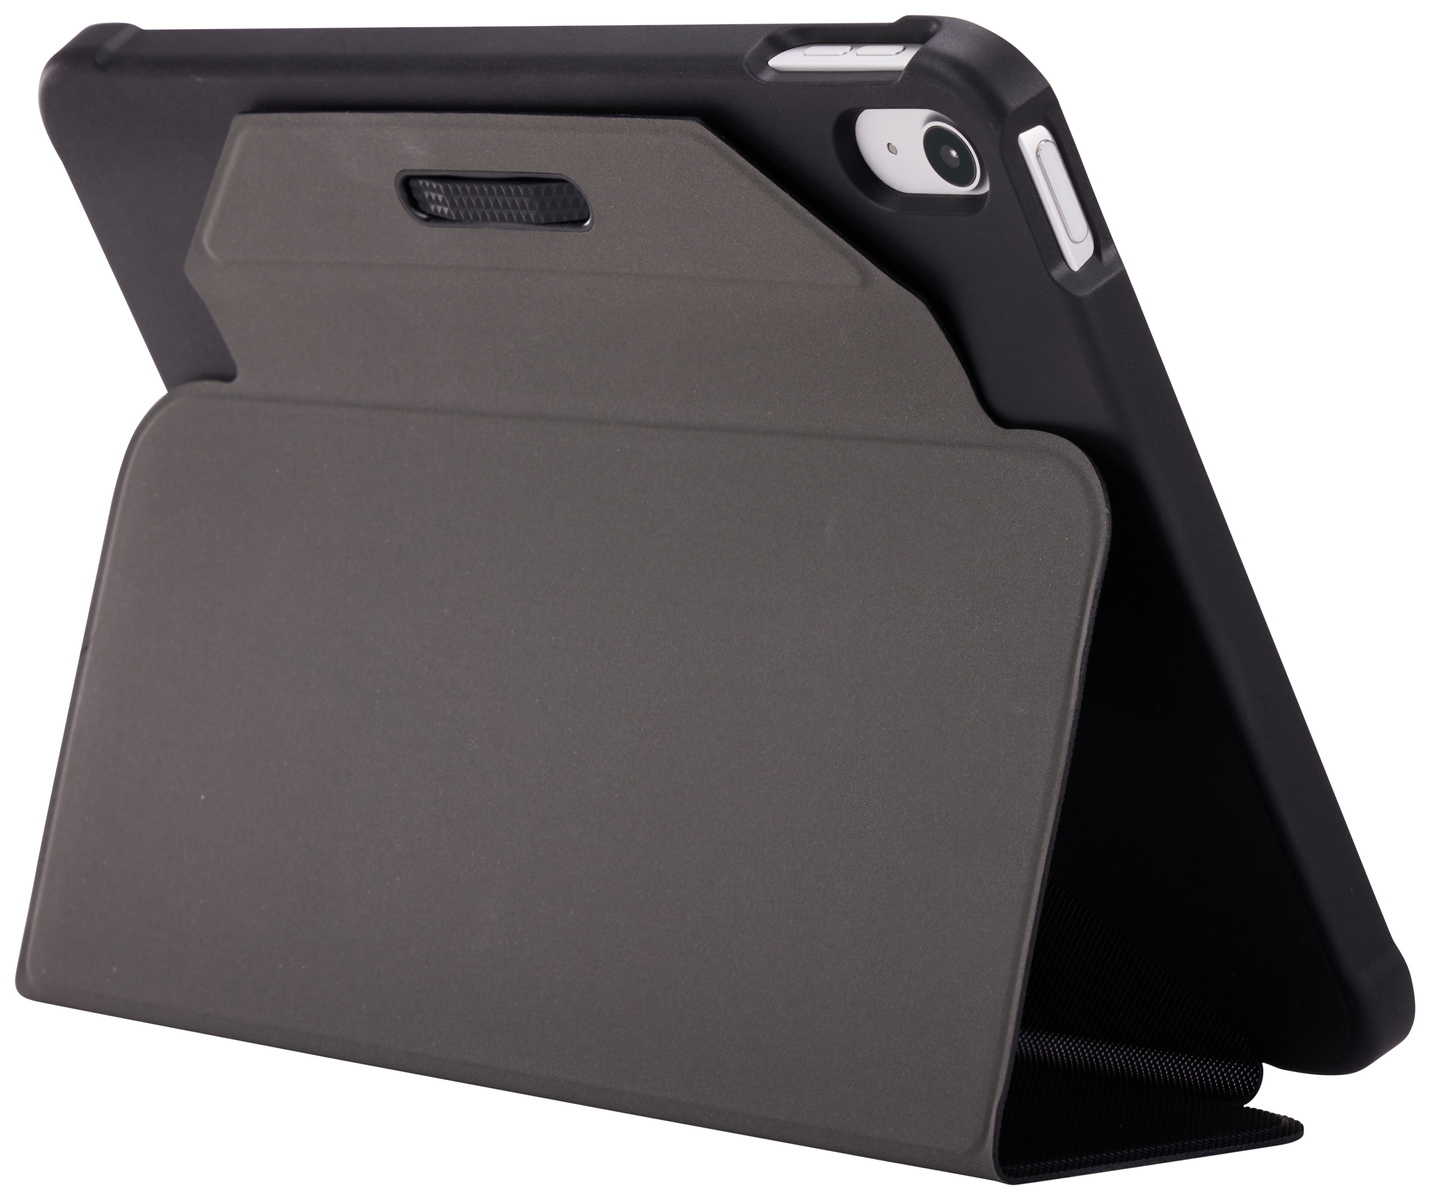 CSIE2156 Full Tablet Apple (TPU), - Cover Hülle Thermoplastisches CASELOGI Polyurethan Polyester, Schwarz Black für